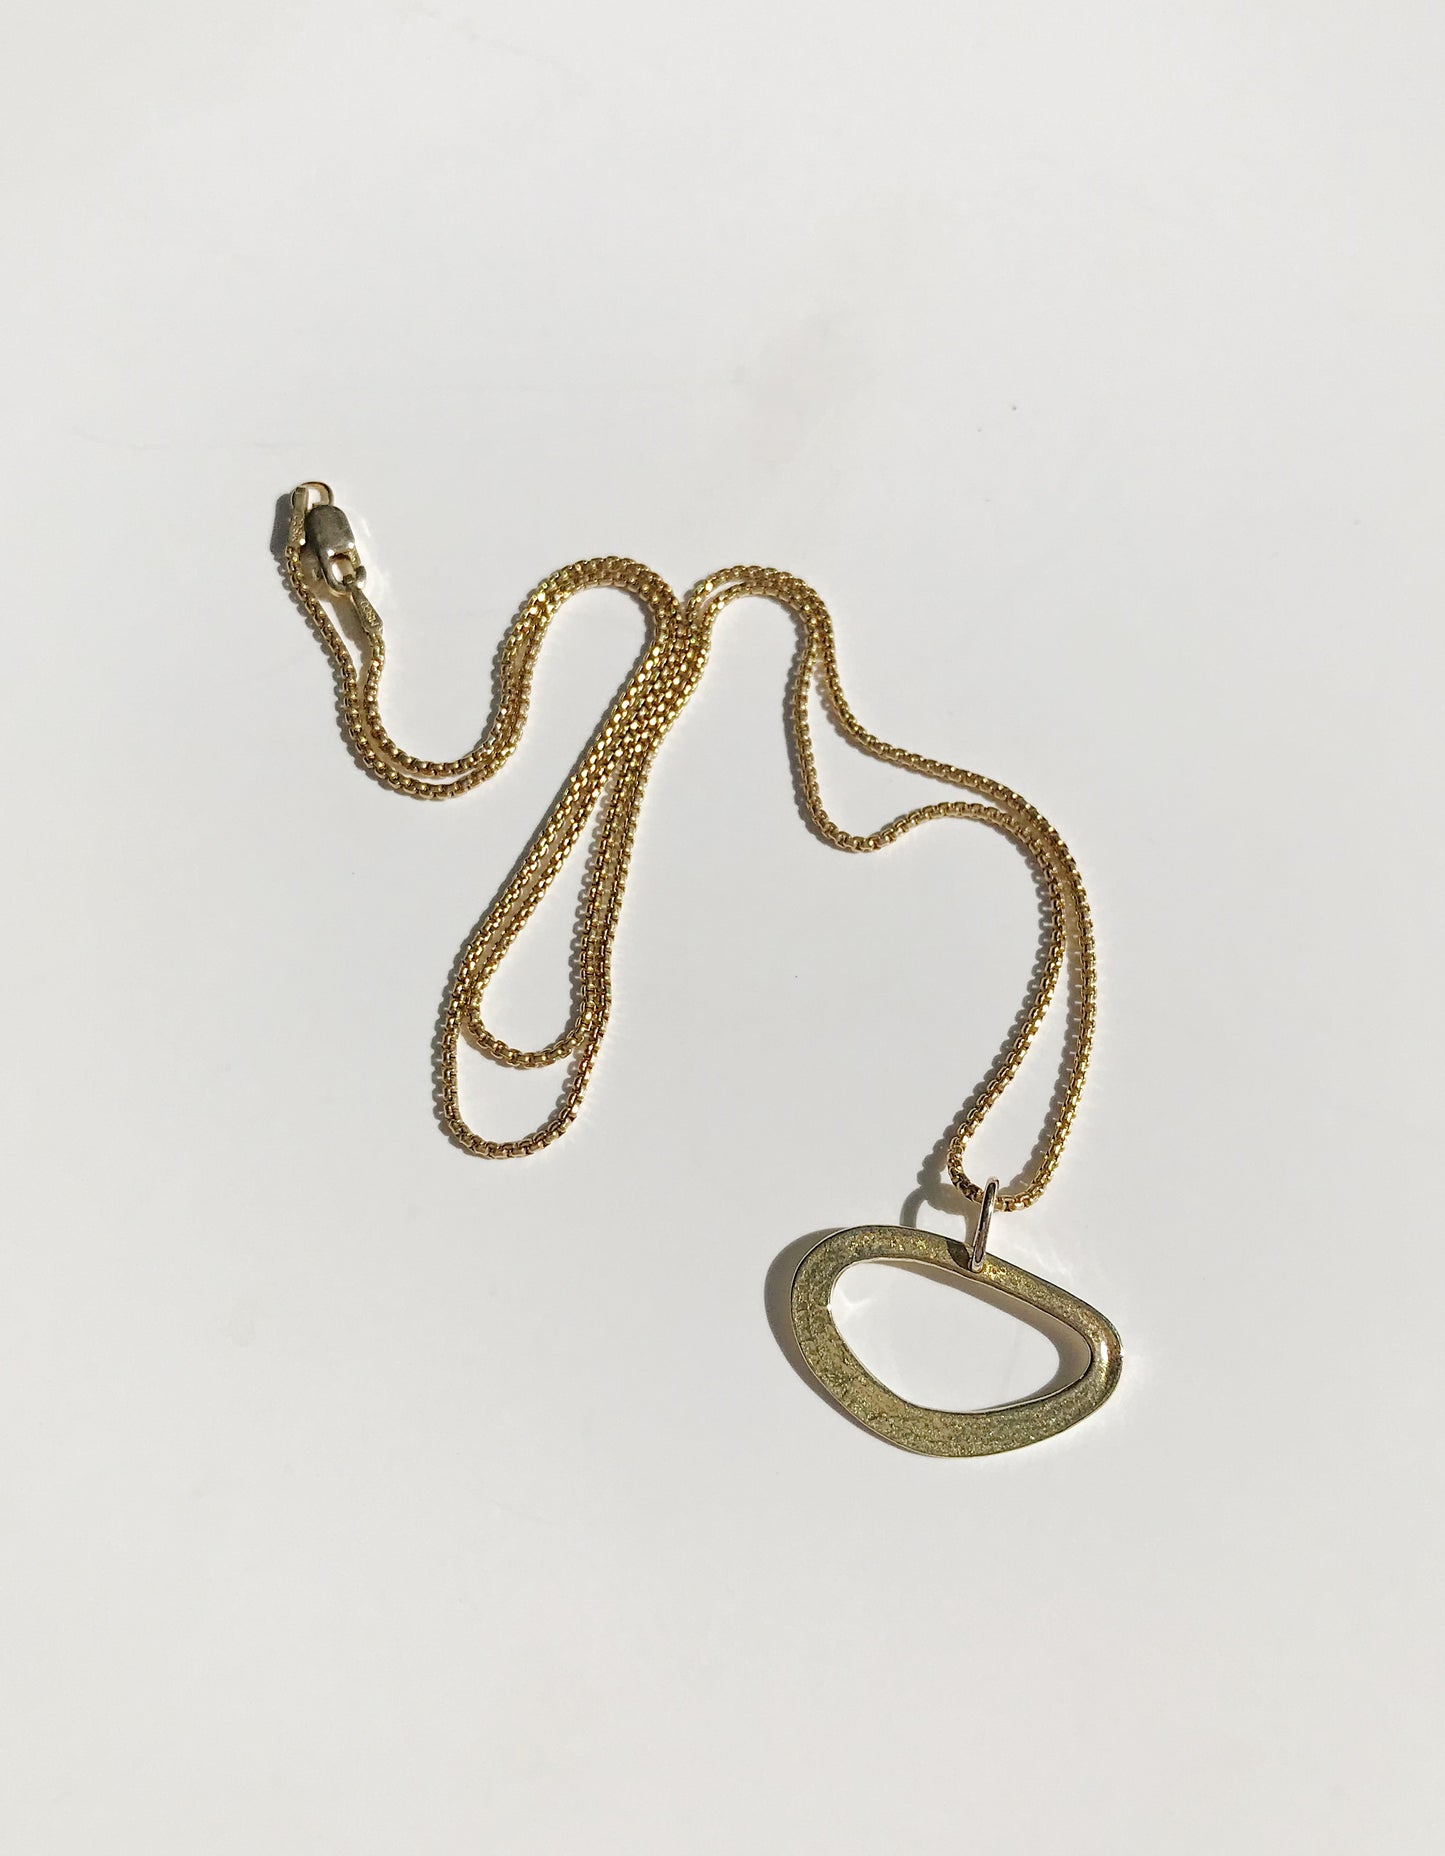 Bermuda necklace